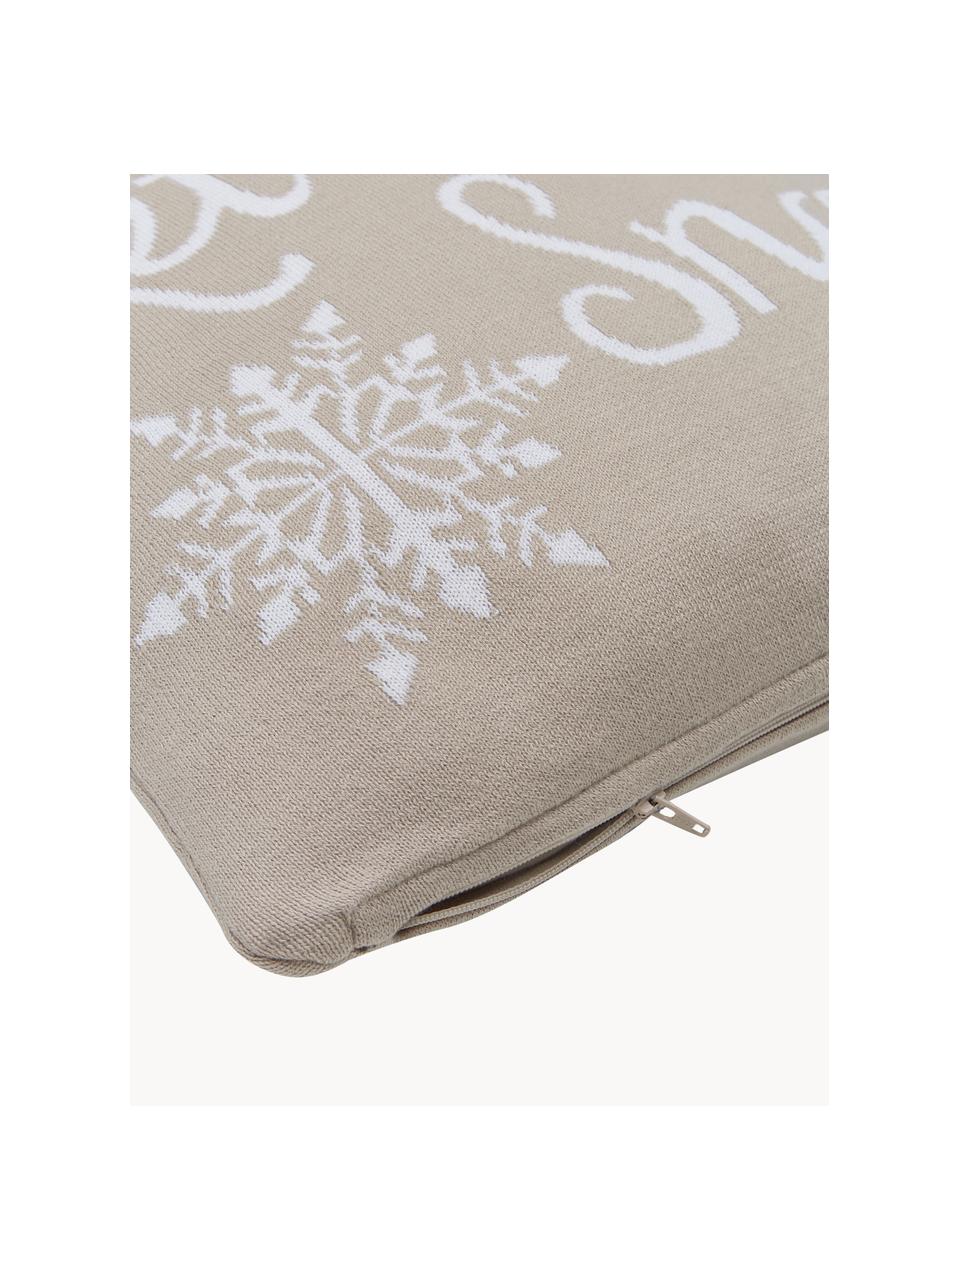 Poszewka na poduszkę Let It Snow, 100% bawełna czesana, Beżowy, biały, S 40 x D 40 cm